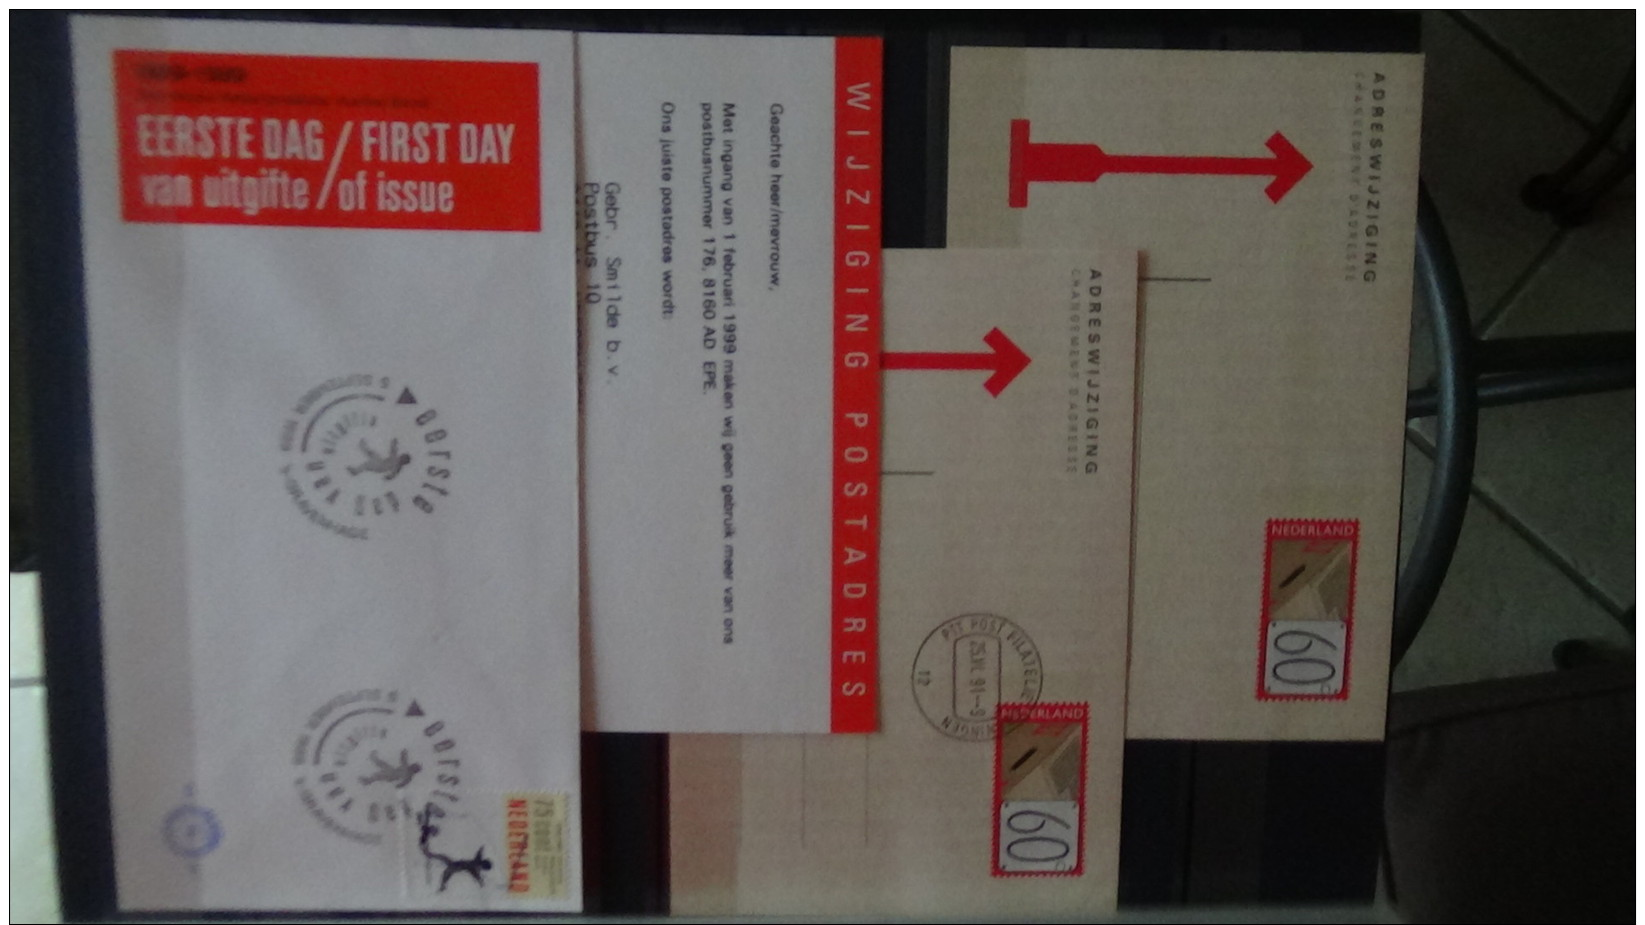 Albums de timbres oblitérés des Pays Bas + courriers. Port 8.65 euros OFFERT !!! A saisir !!!